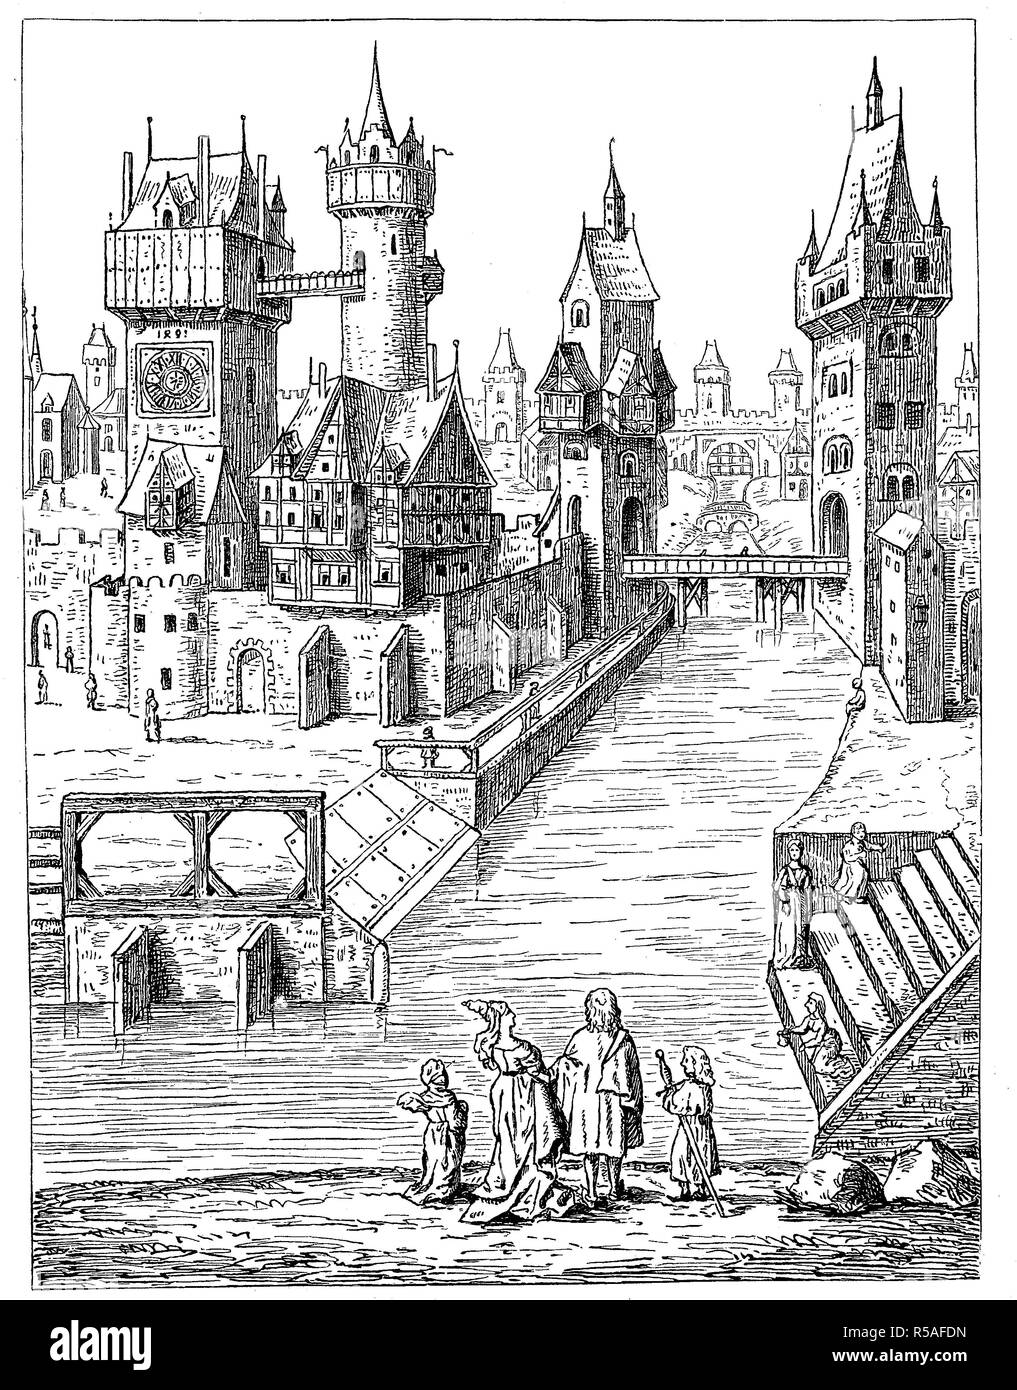 Scène dans une ville de la XV. Jahrhundert, les gens de la rivière, dessin, plume et encre à partir de 1491 dans la bibliothèque d'Erlangen, 1880 Banque D'Images